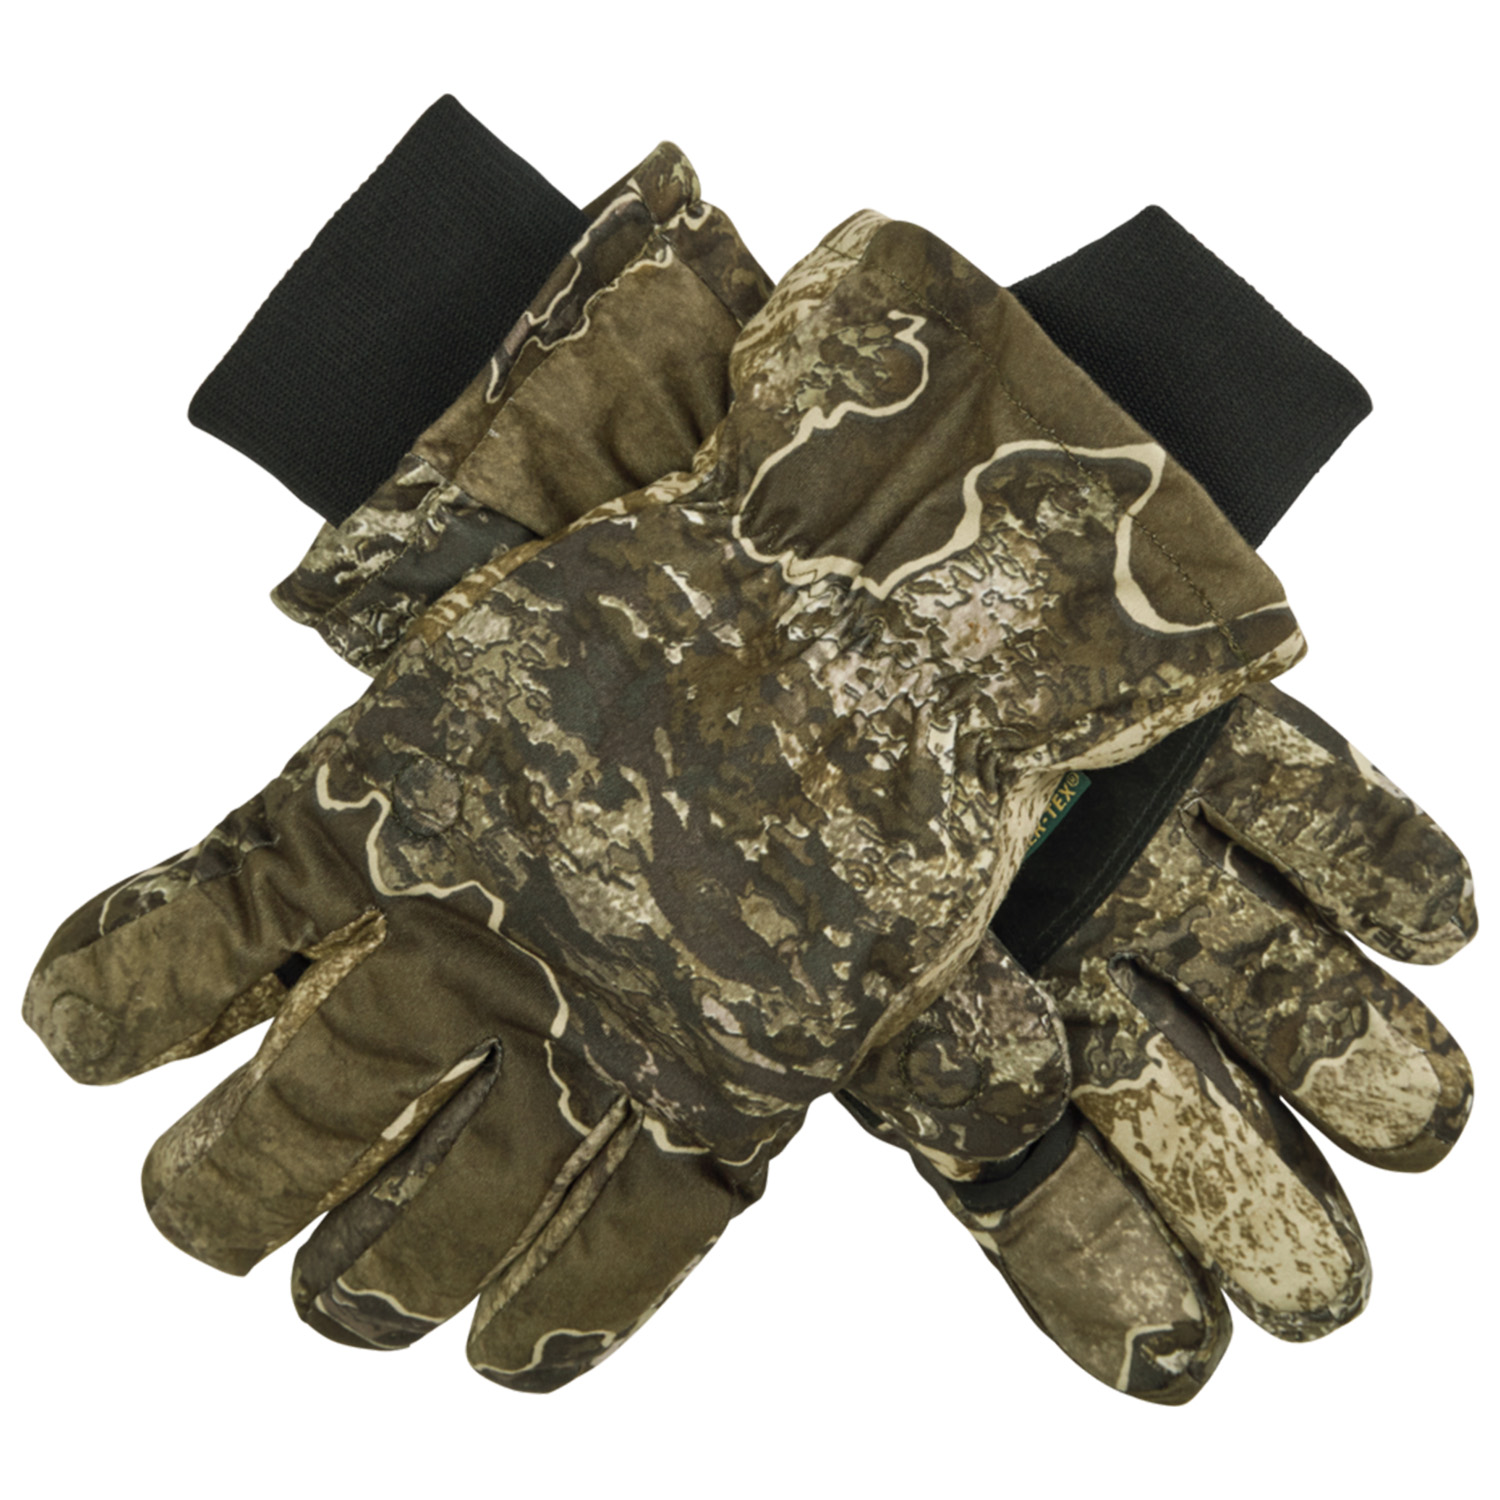 Deerhunter Winter Handschuhe Excape (Realtree) - Handschuhe